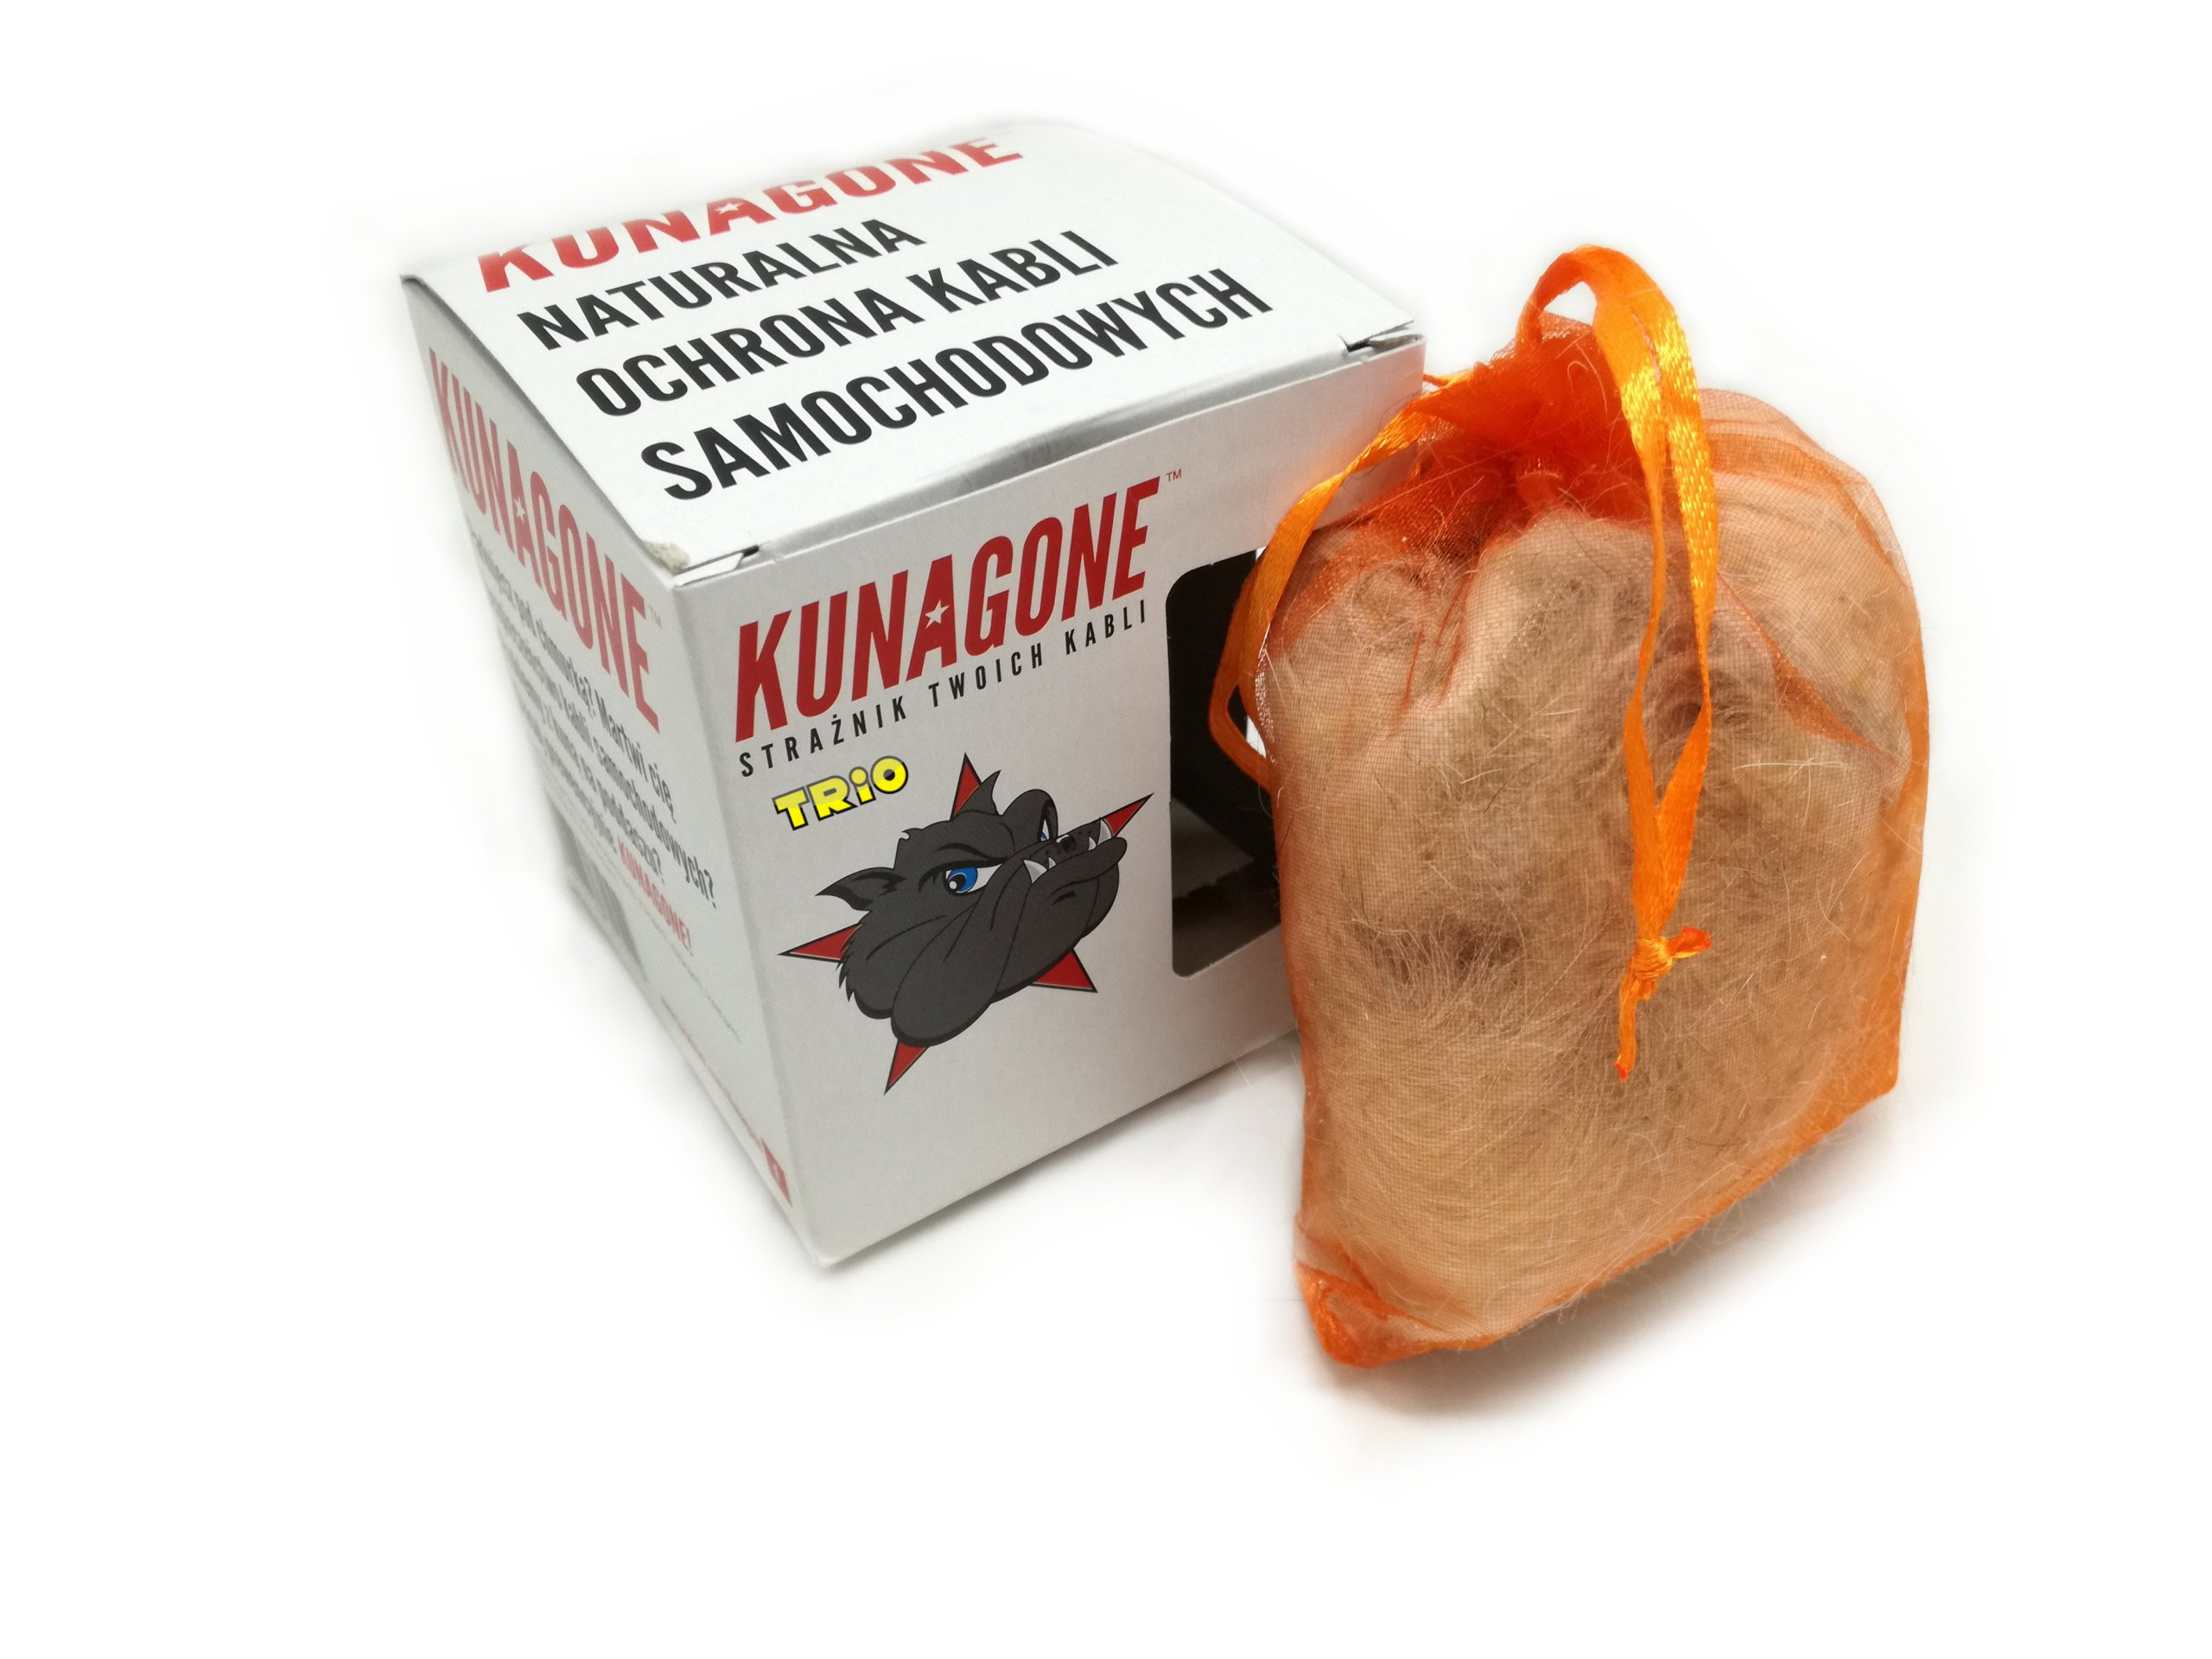 Kunagone - produkt odstraszający kuny i inne gryzonie, chroni samochód i poddasza przed szkodnikami działa również na dzikie zwierzęta, chroni instalacje elektryczne w samochodzie